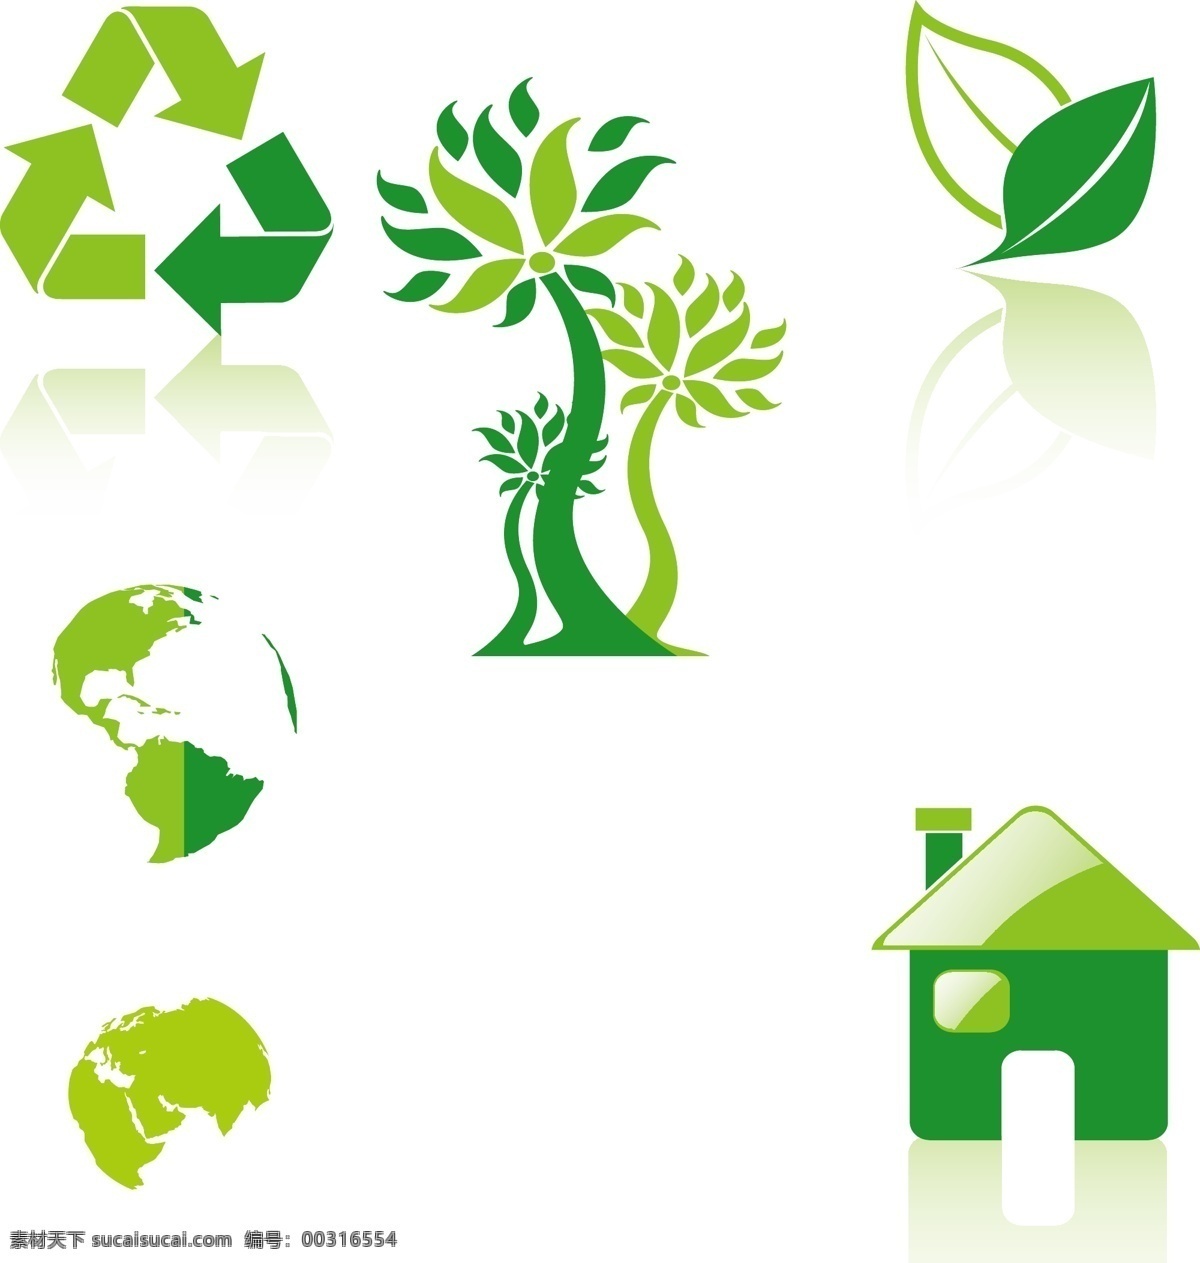 环保图标 环保素材 环保 绿色 绿色生活 绿色城市 绿叶 循环利用 无污染排放 图标 标志图标 其他图标